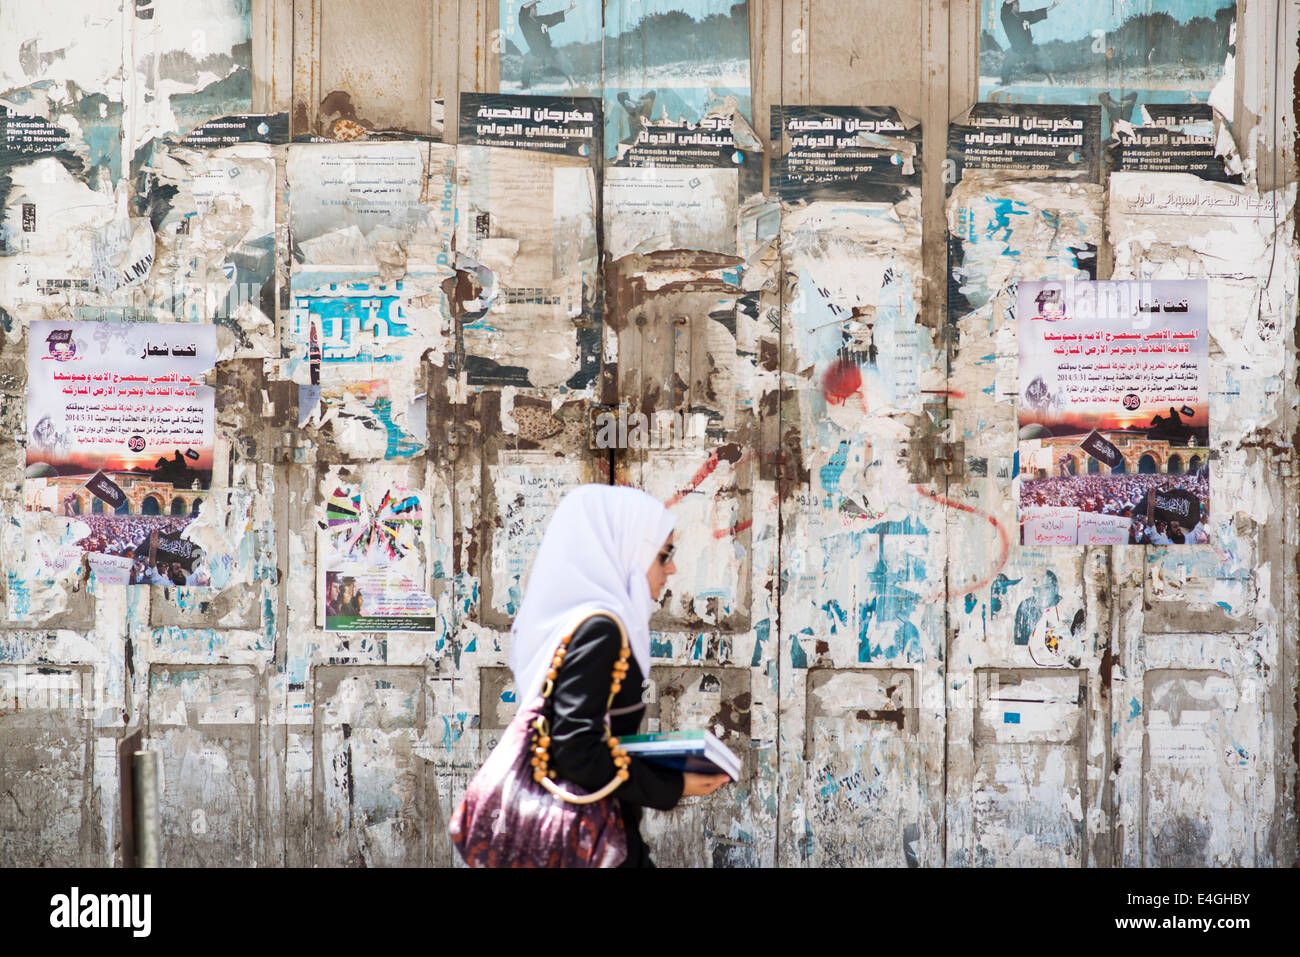 Ramallah. 10 juillet, 2014. Une femme palestinienne va à ses occupations quotidiennes comme d'habitude dans le centre commercial de la place Al-Manara. Les manifestations ont été éclatent dans la région en réaction au récent conflit avec Israël. Kevin Su/Alamy Live News Banque D'Images